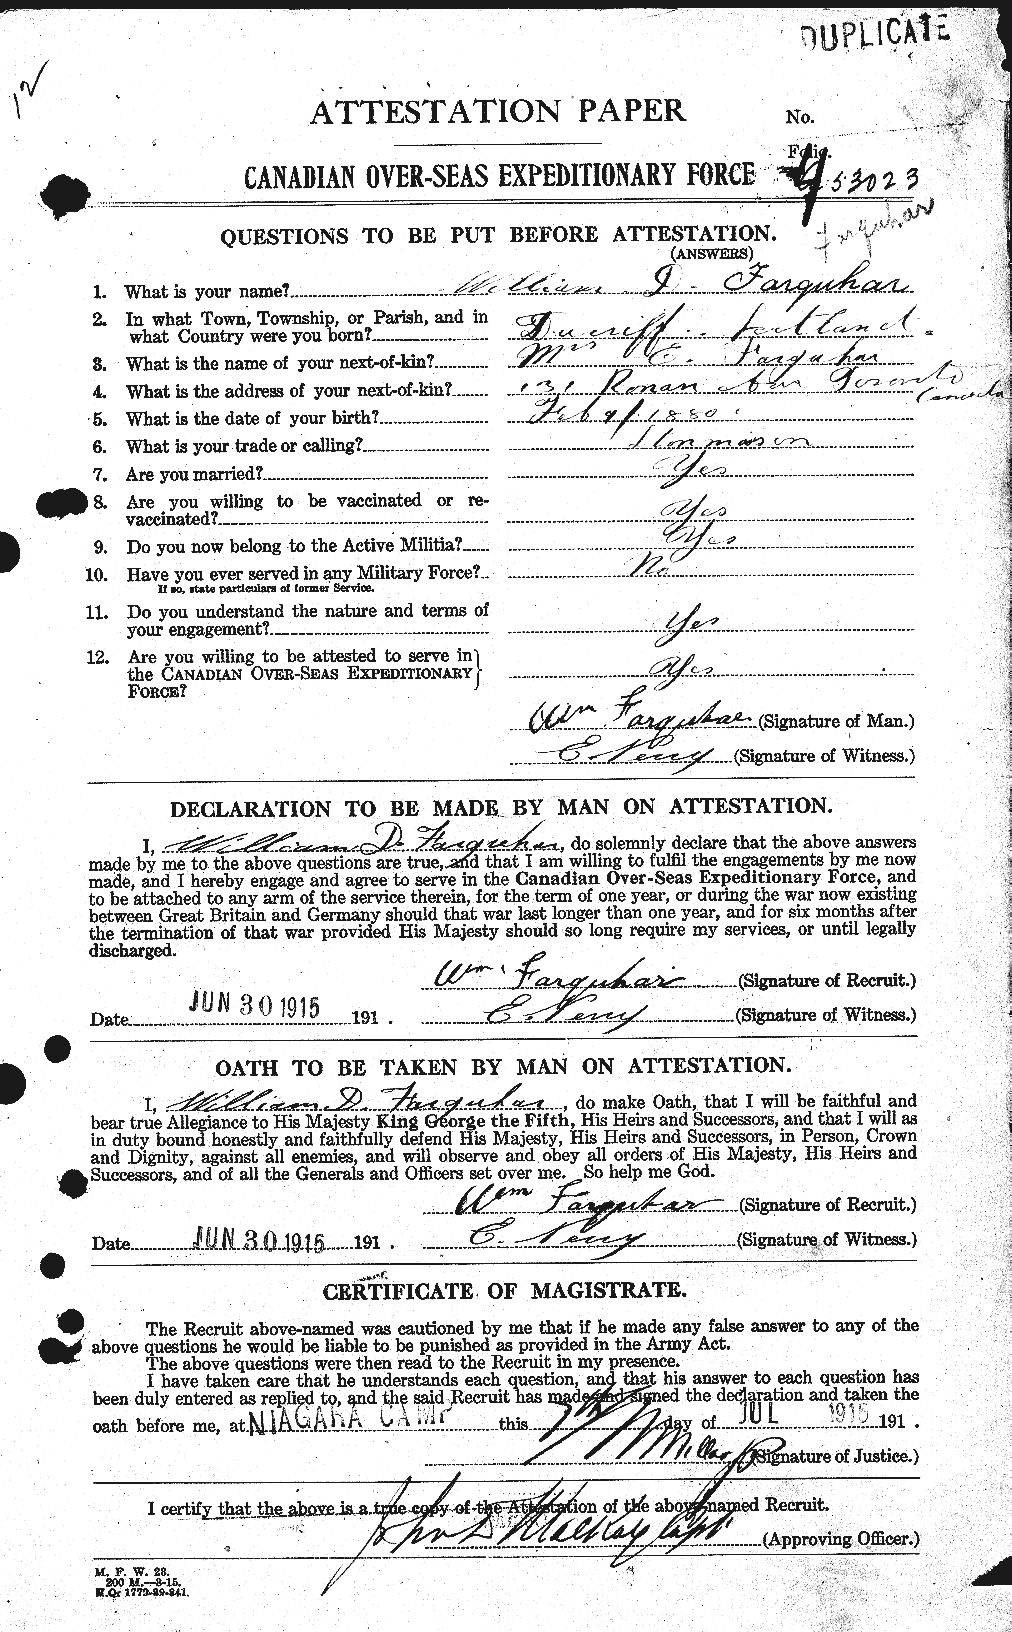 Dossiers du Personnel de la Première Guerre mondiale - CEC 319286a